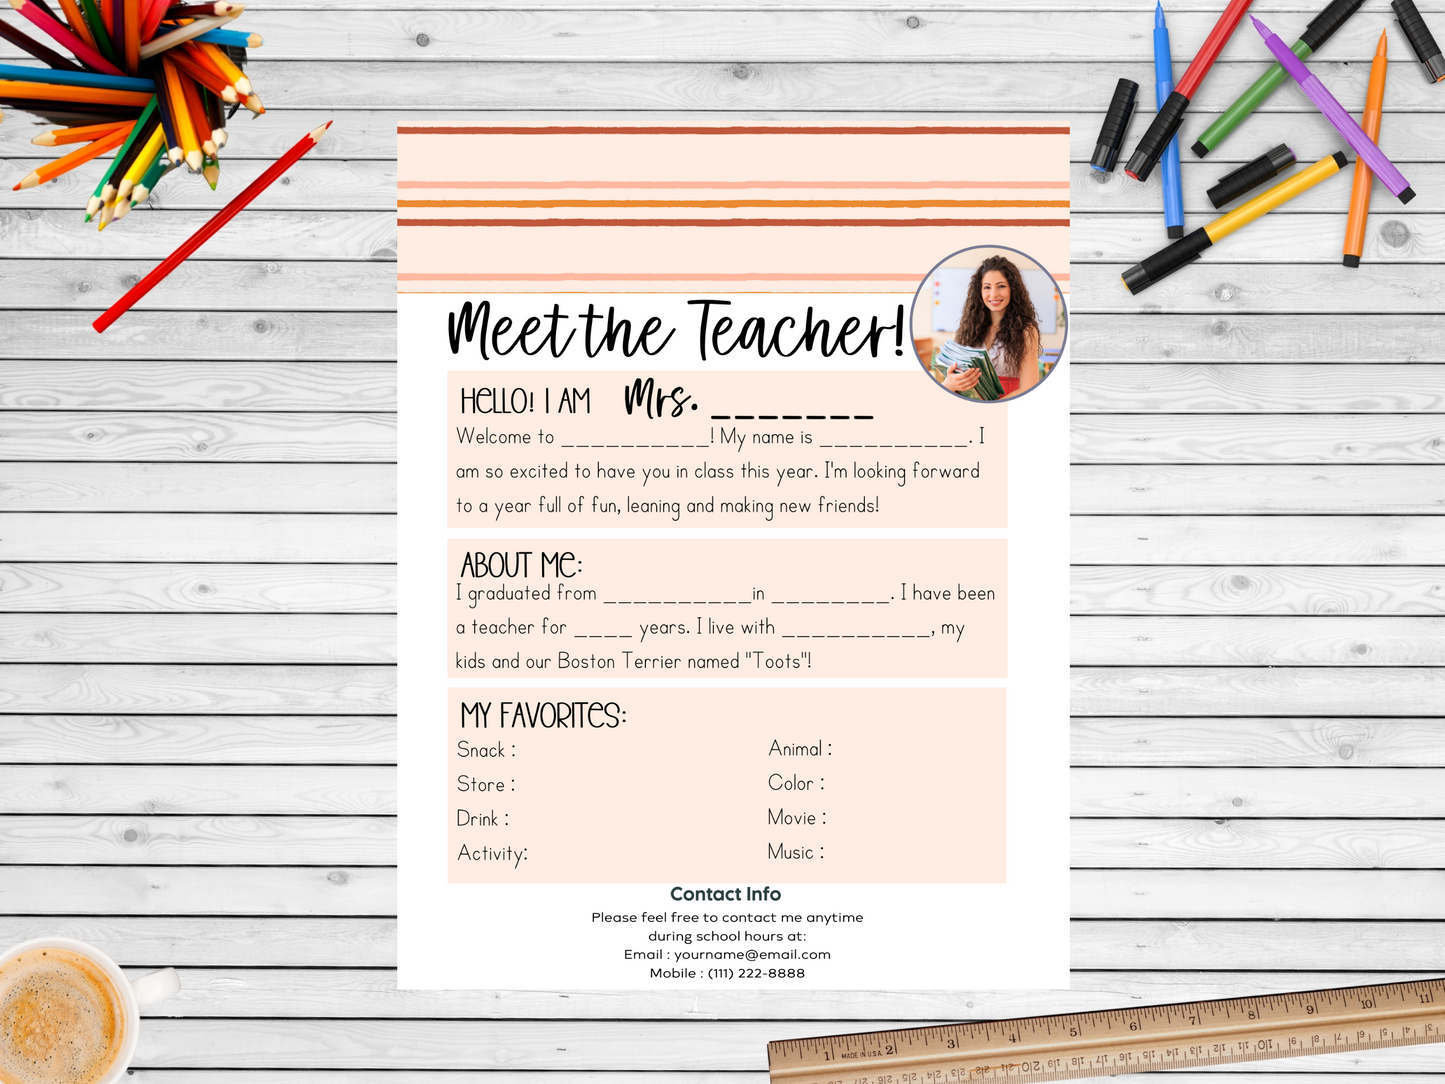 Meet the Teacher Letter Template - Stripe